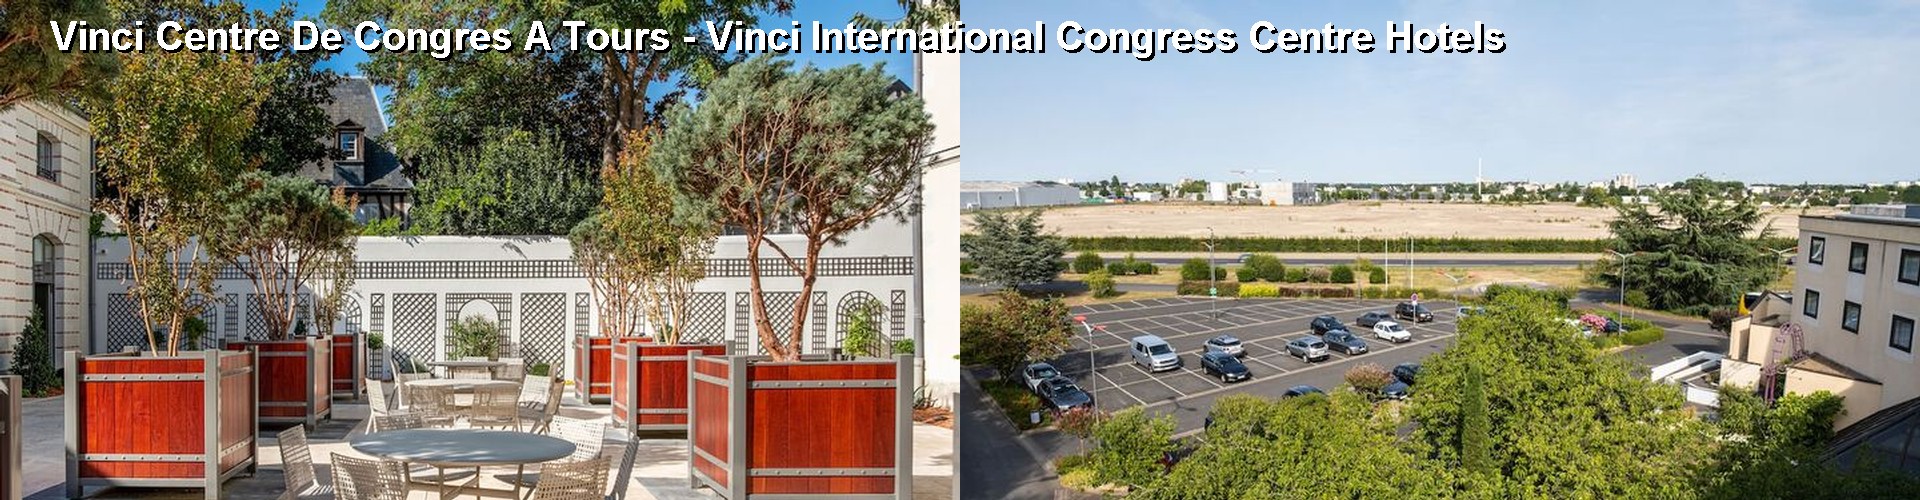 5 Best Hotels near Vinci Centre De Congres A Tours - Vinci International Congress Centre